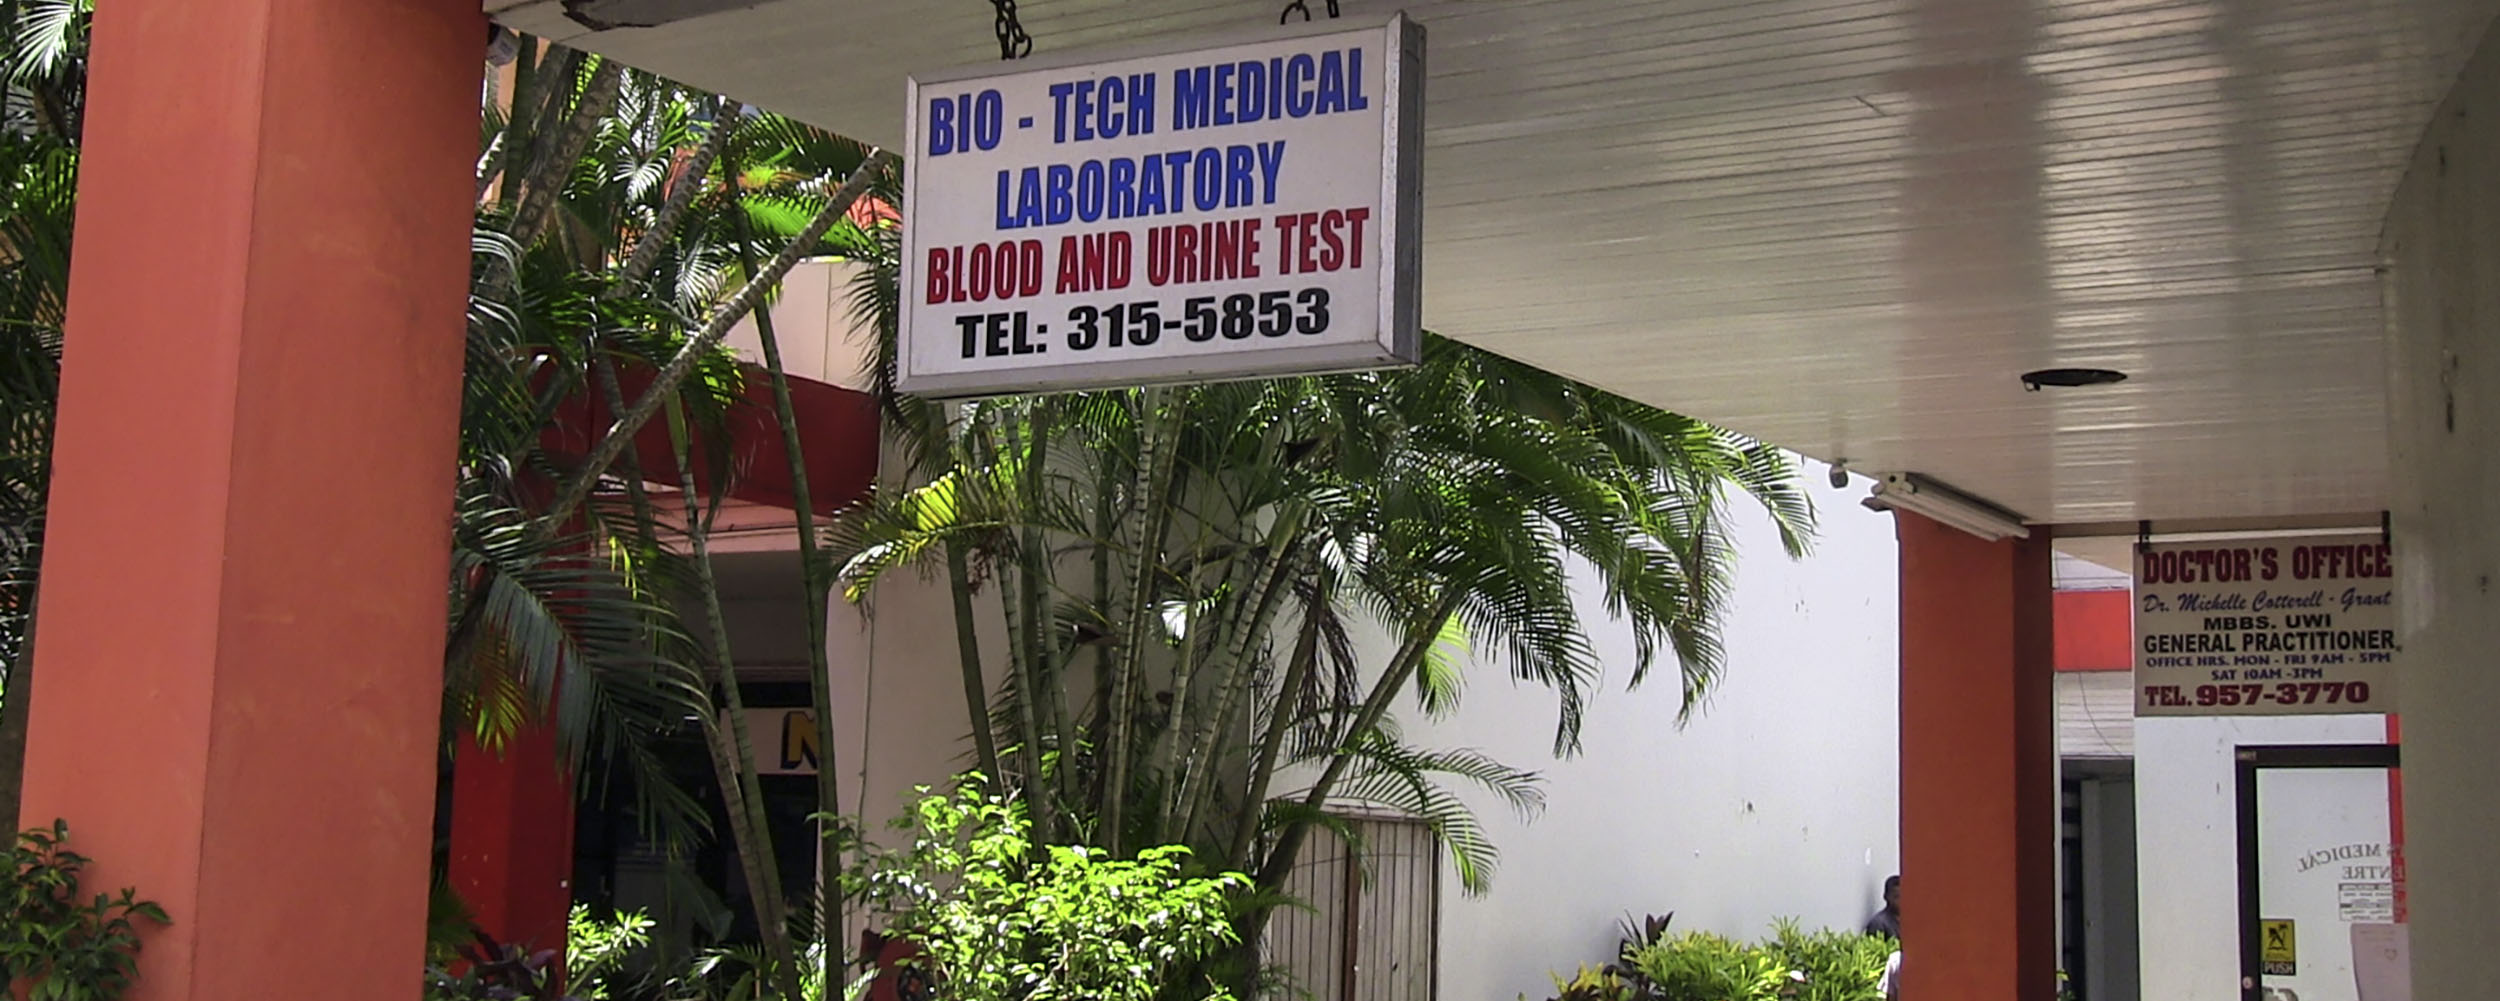 Bio Tech Medical Laboratory - Sunshine Village Complex - West End Road - Negril Jamaica